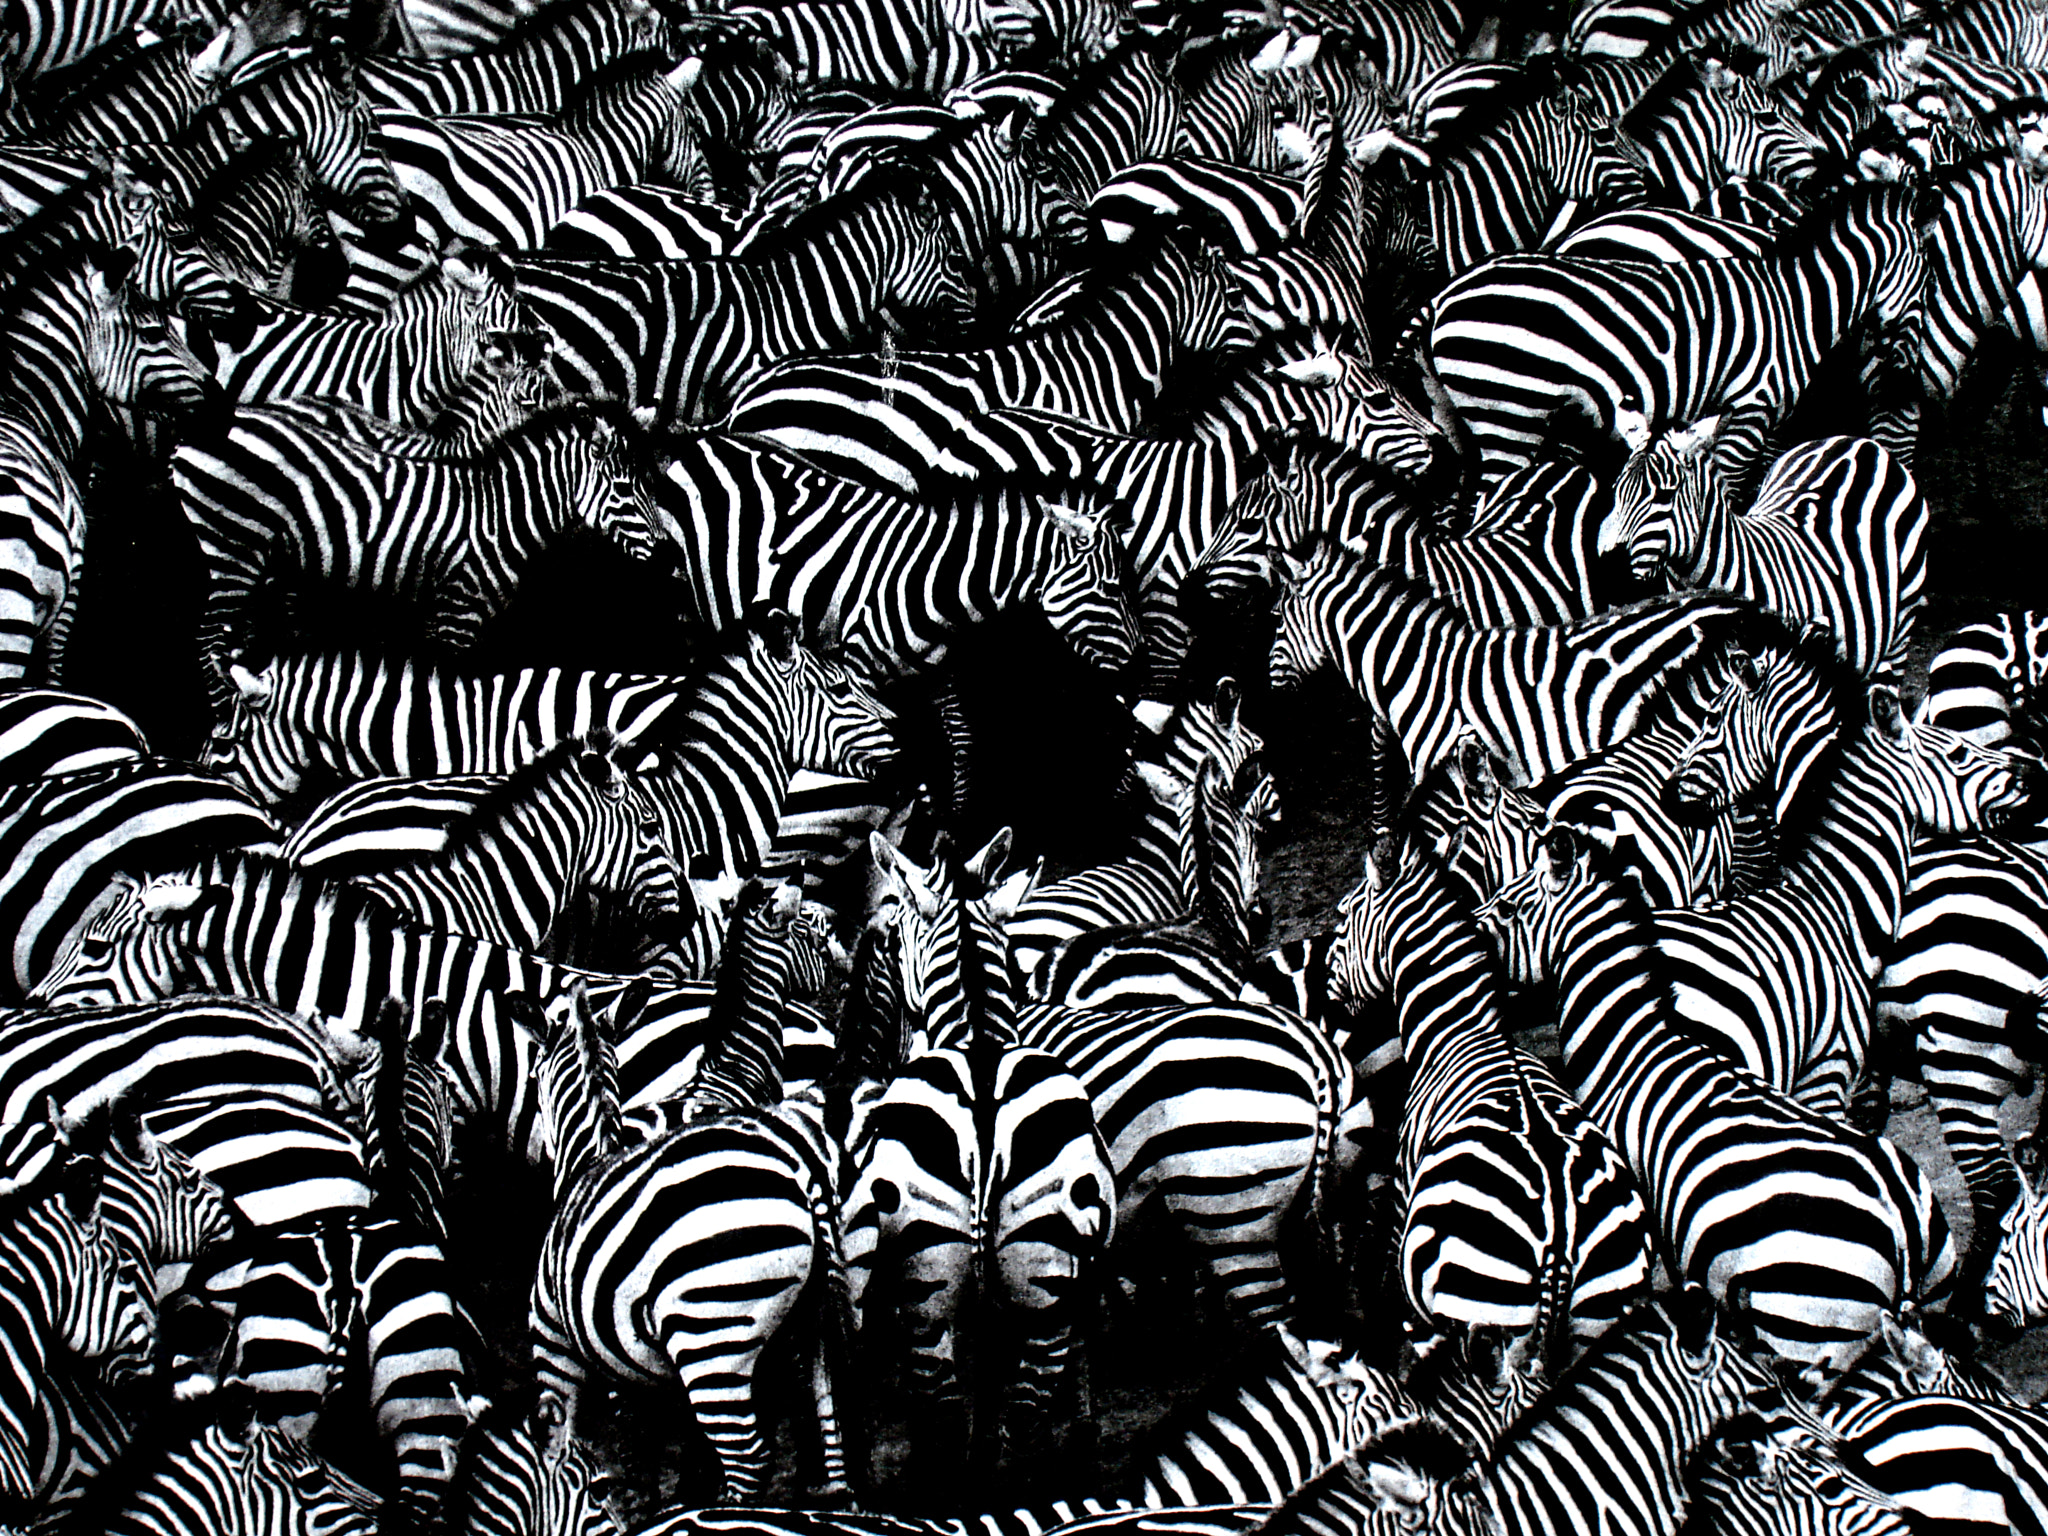 Sony DSC-W100 sample photo. Zebras photography